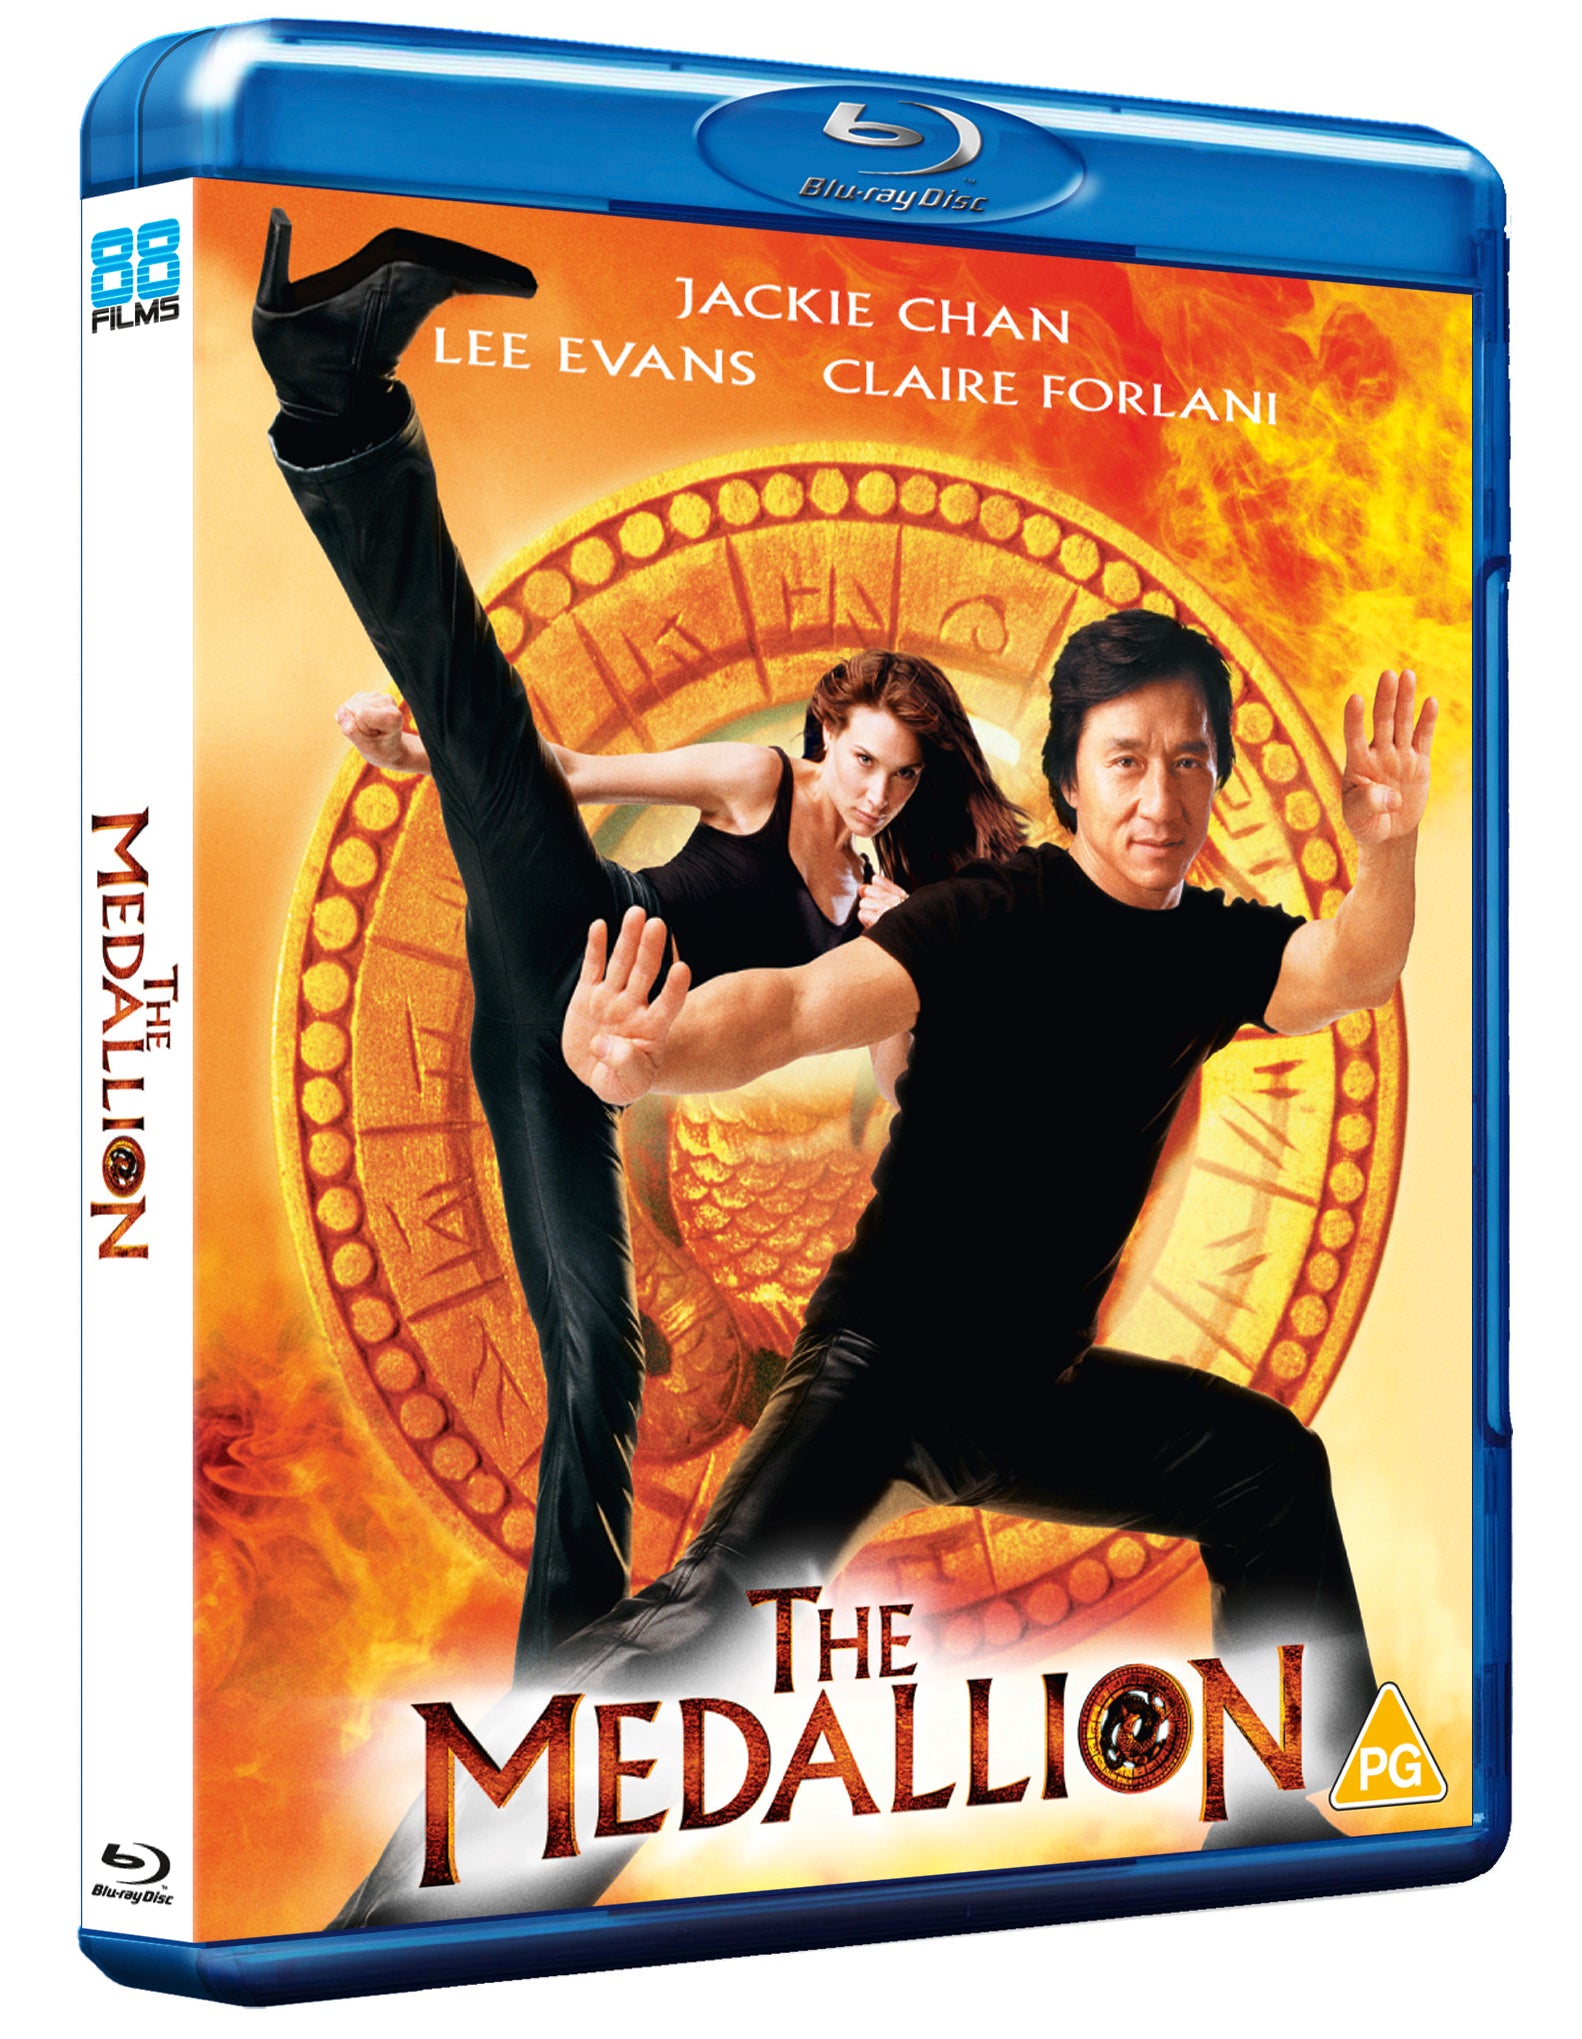 The Medallion – 88 Films